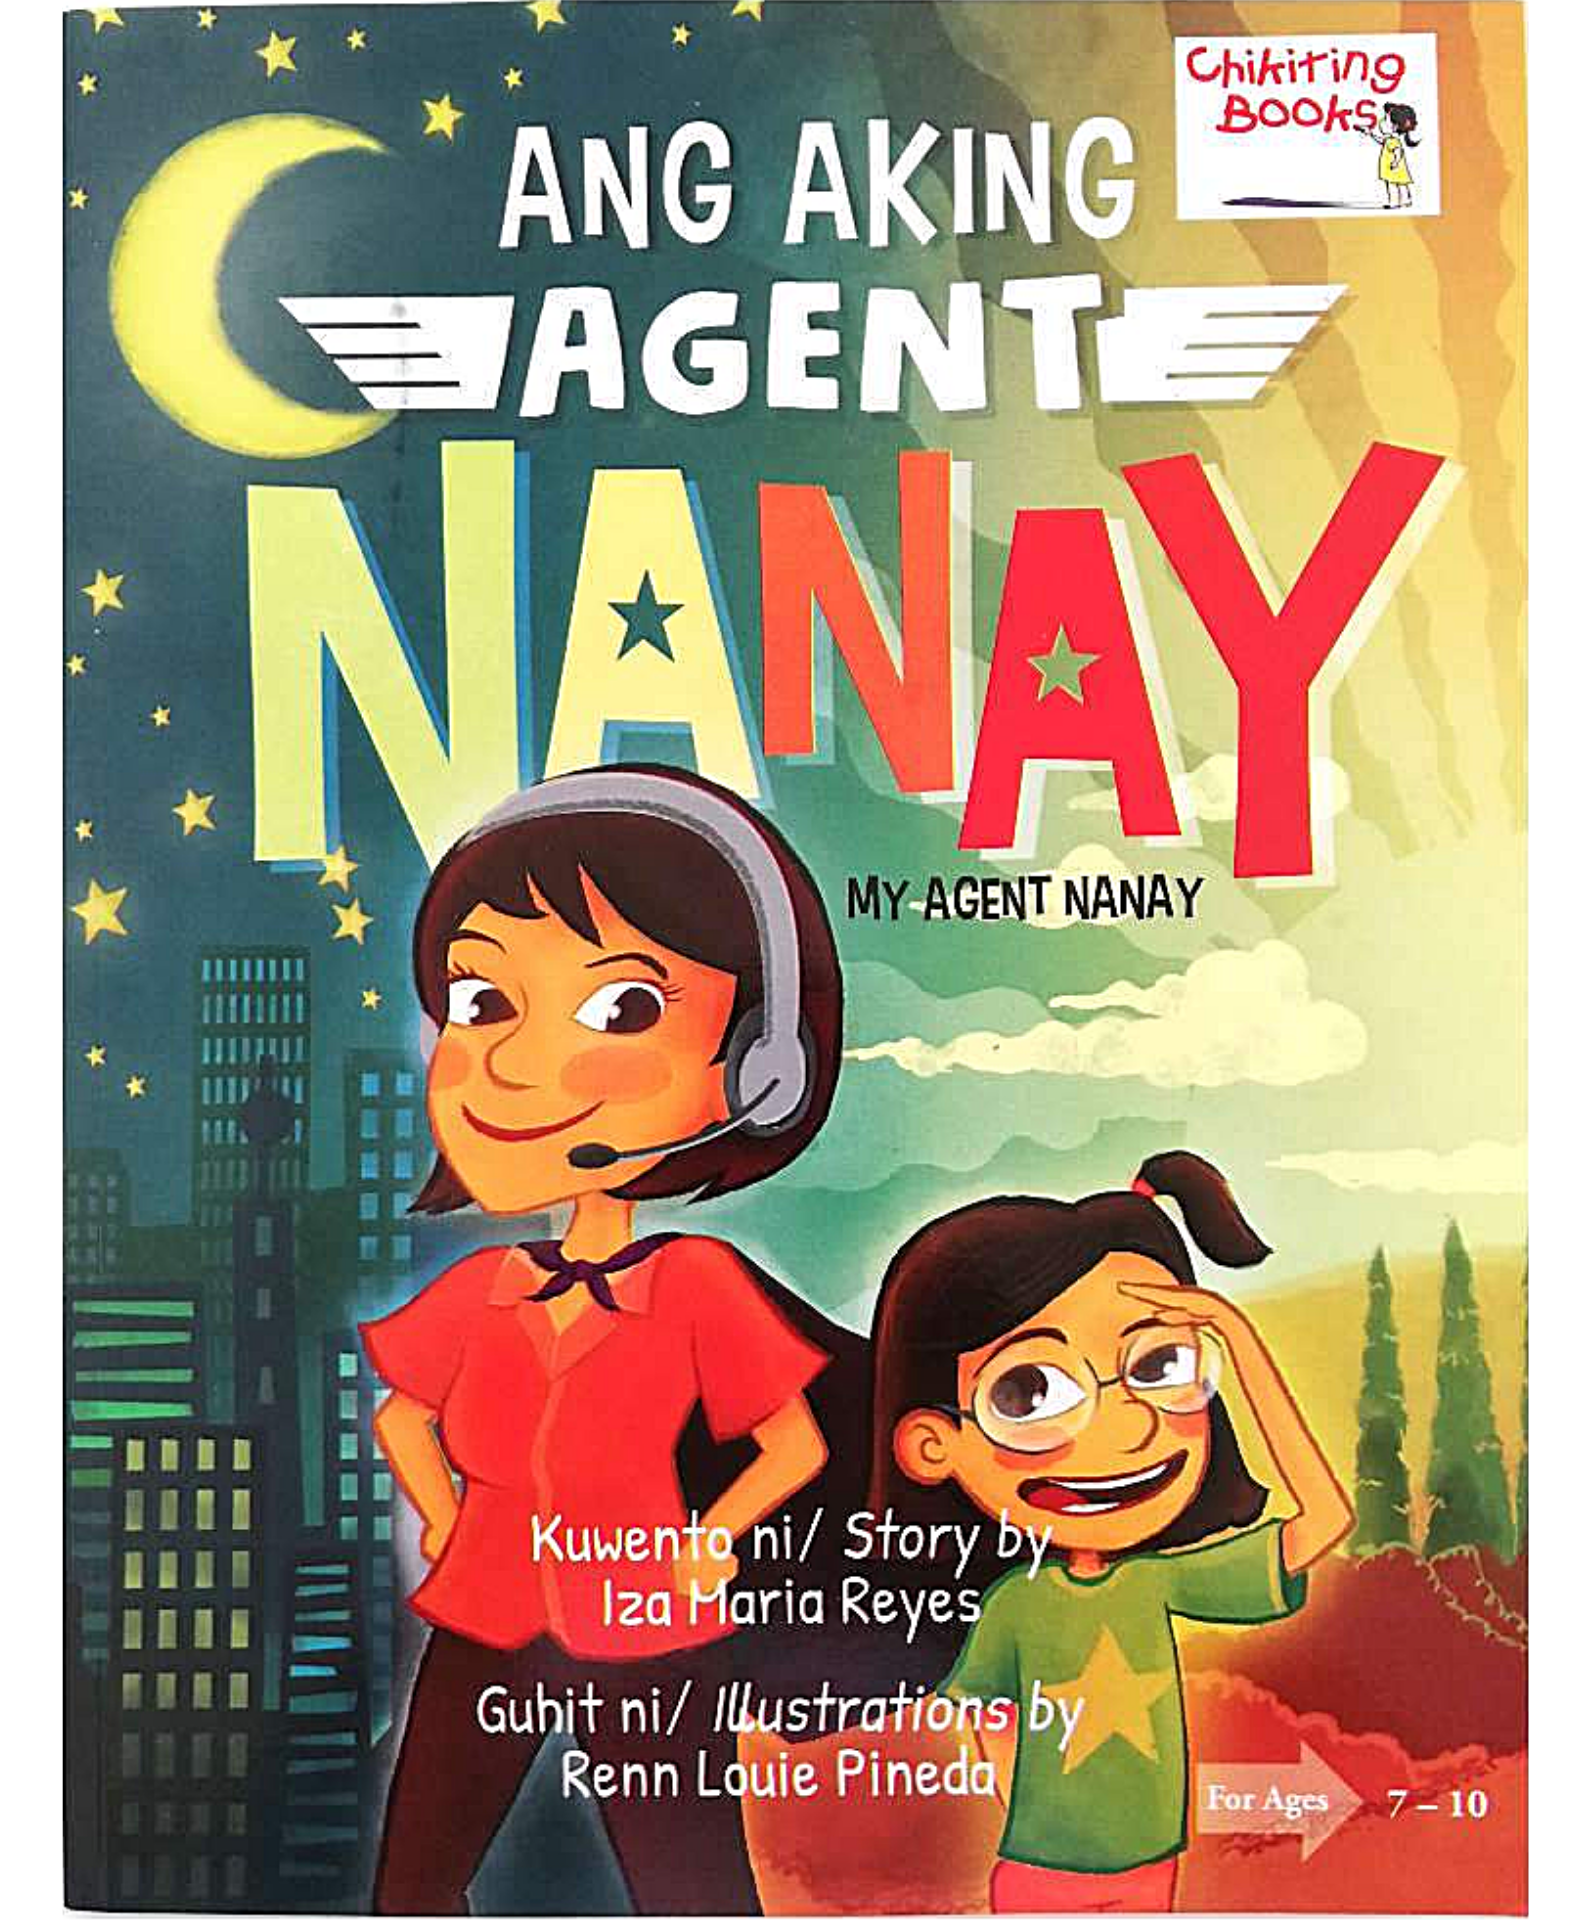 Ang Aking Agent Nanay (My Agent Nanay)